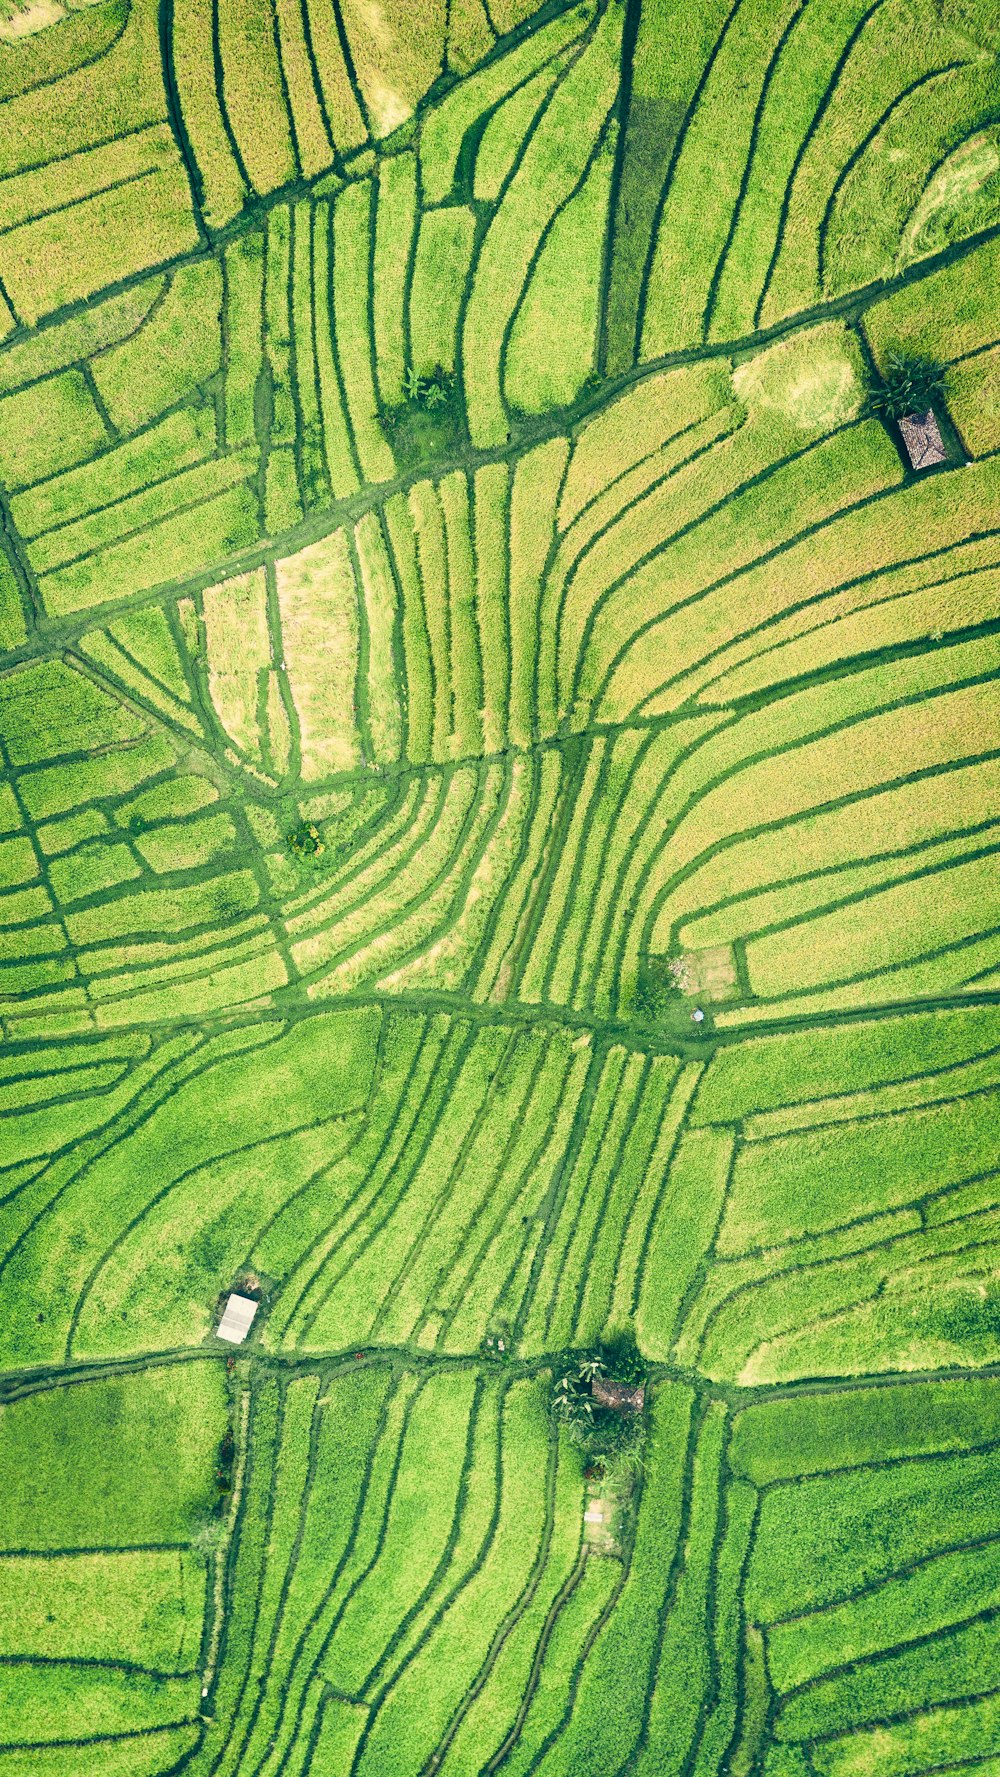 Photographie aérienne d’une rizière